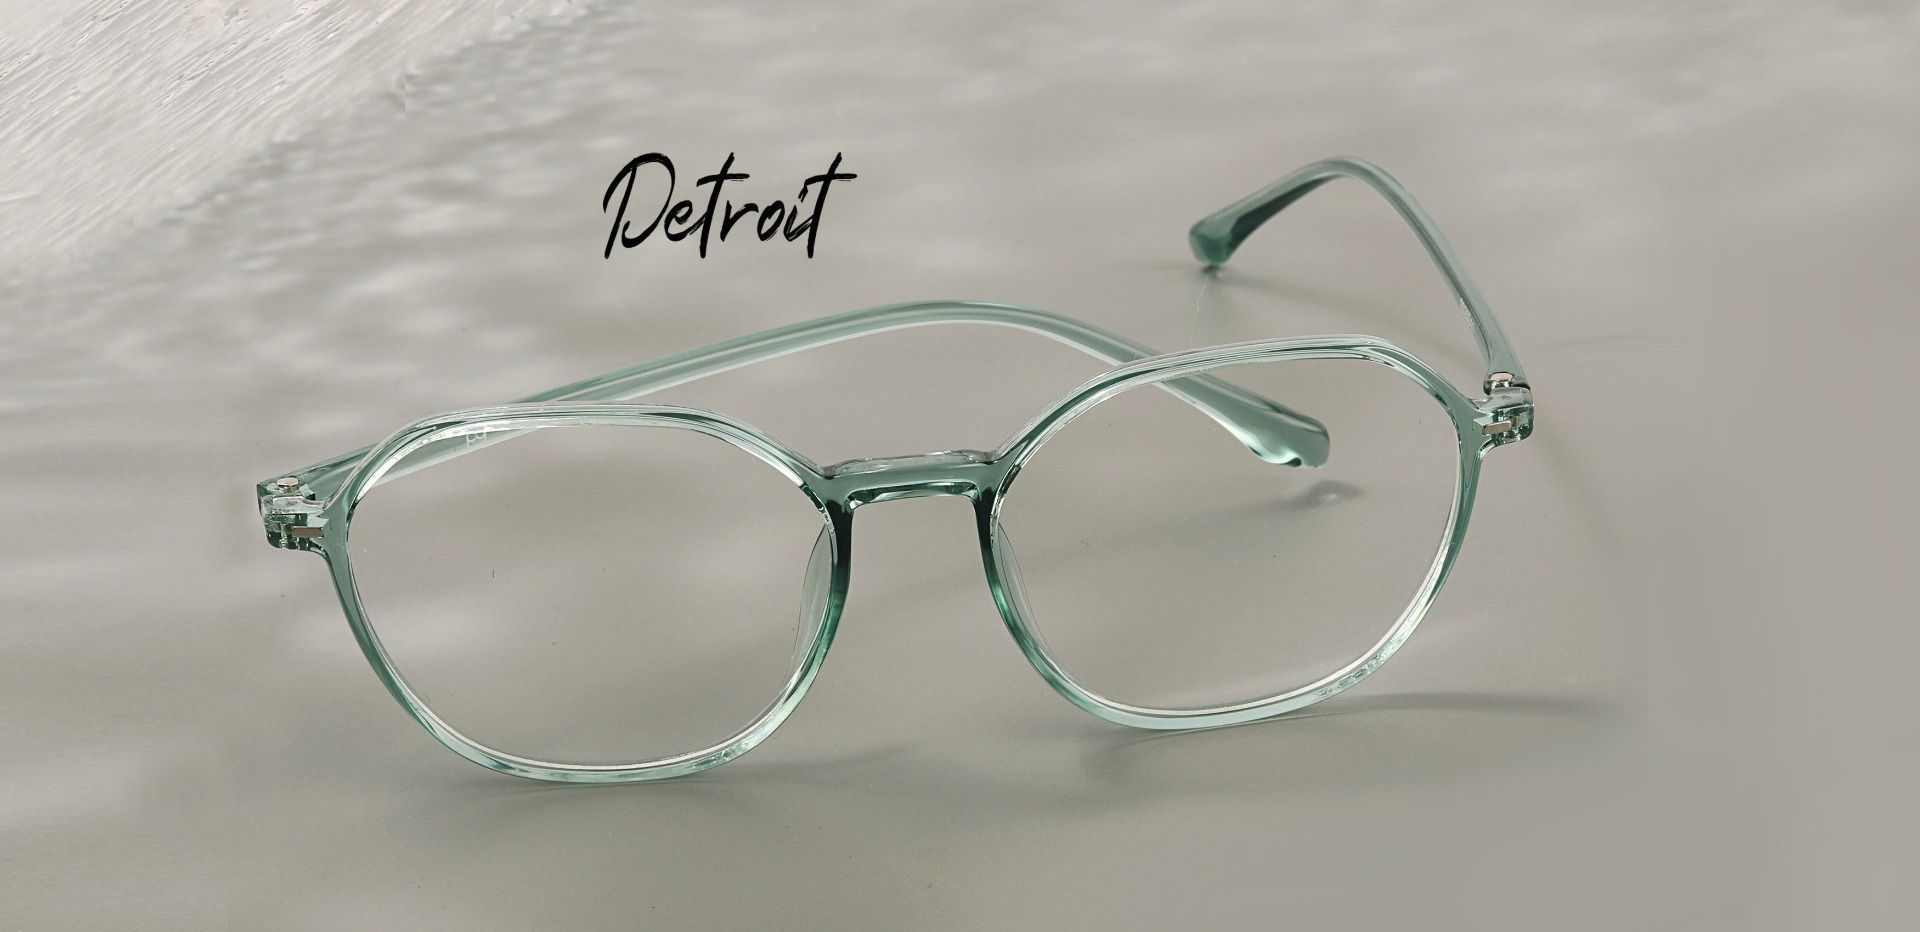 Detroit Geometric Progressive Glasses - Green